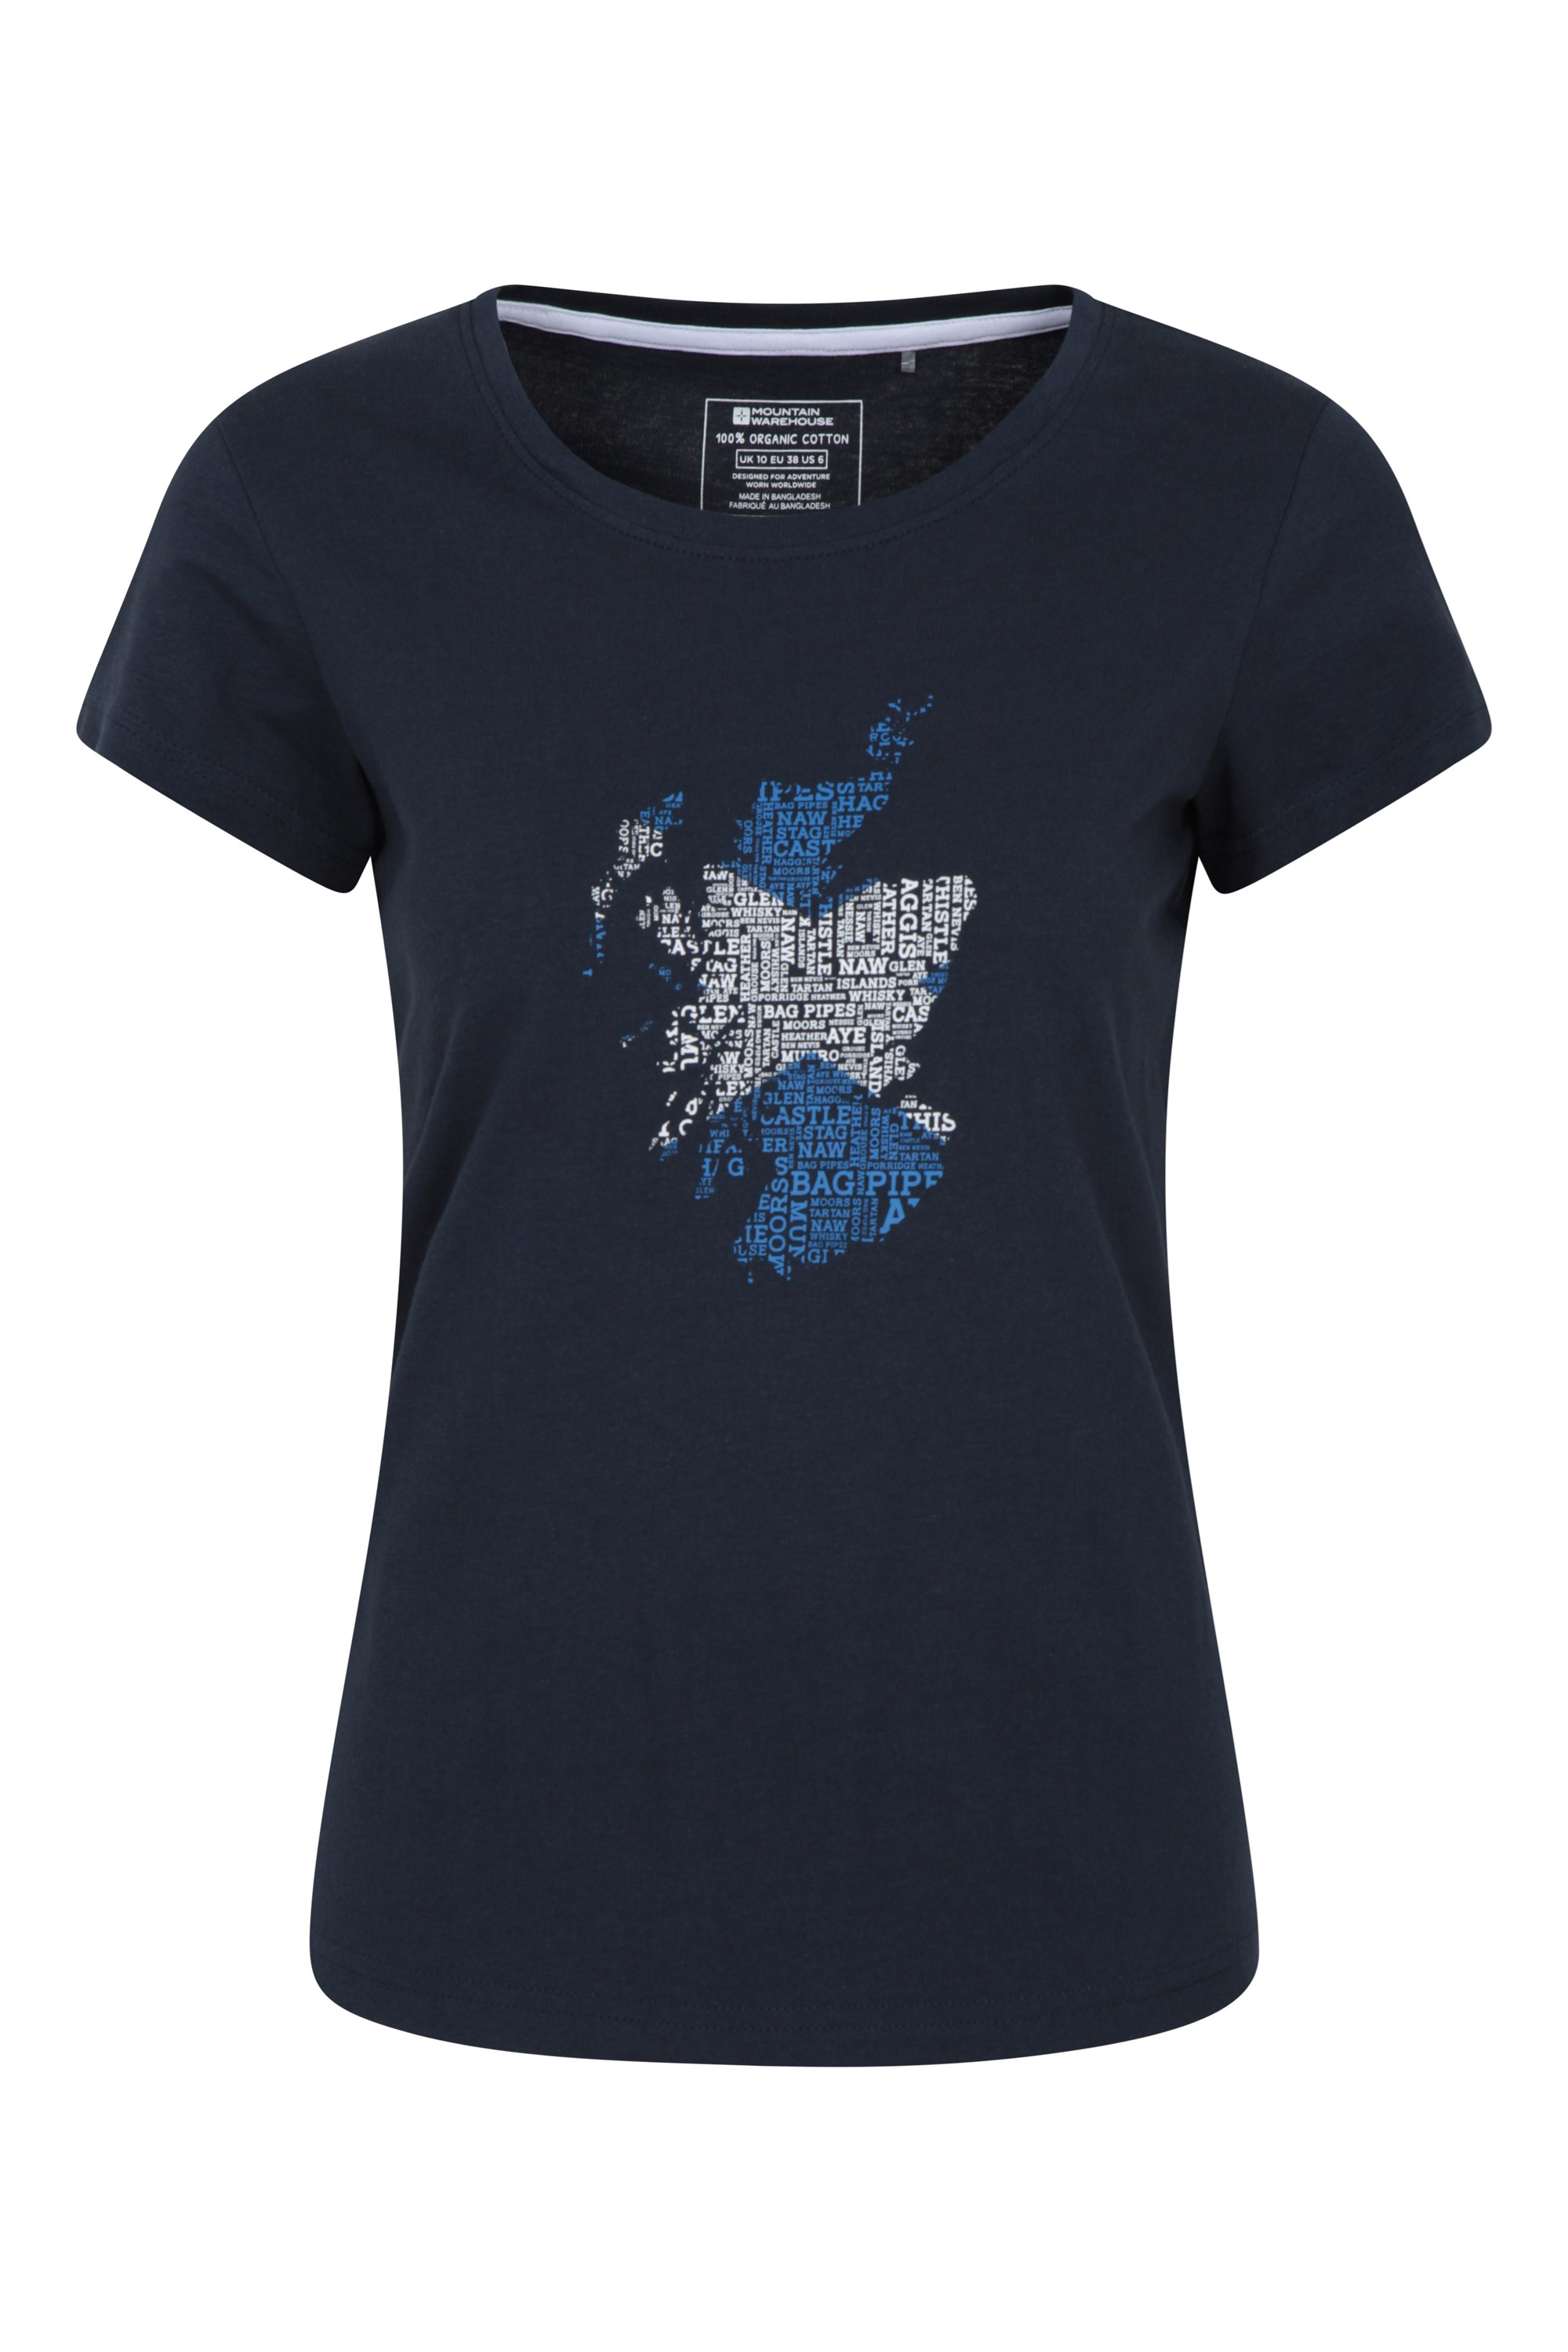 T-Shirt Scotland Femme - Bleu Marine